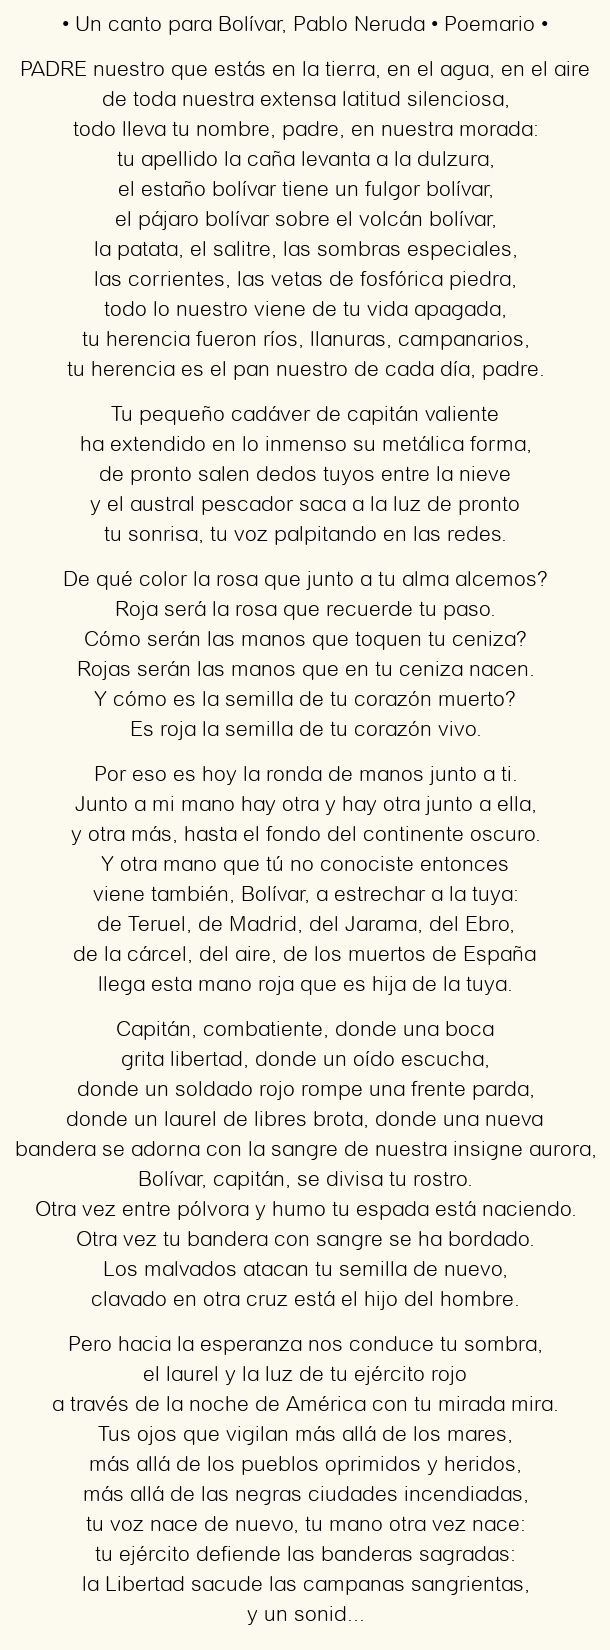 Imagen con el poema Un canto para Bolívar, por Pablo Neruda